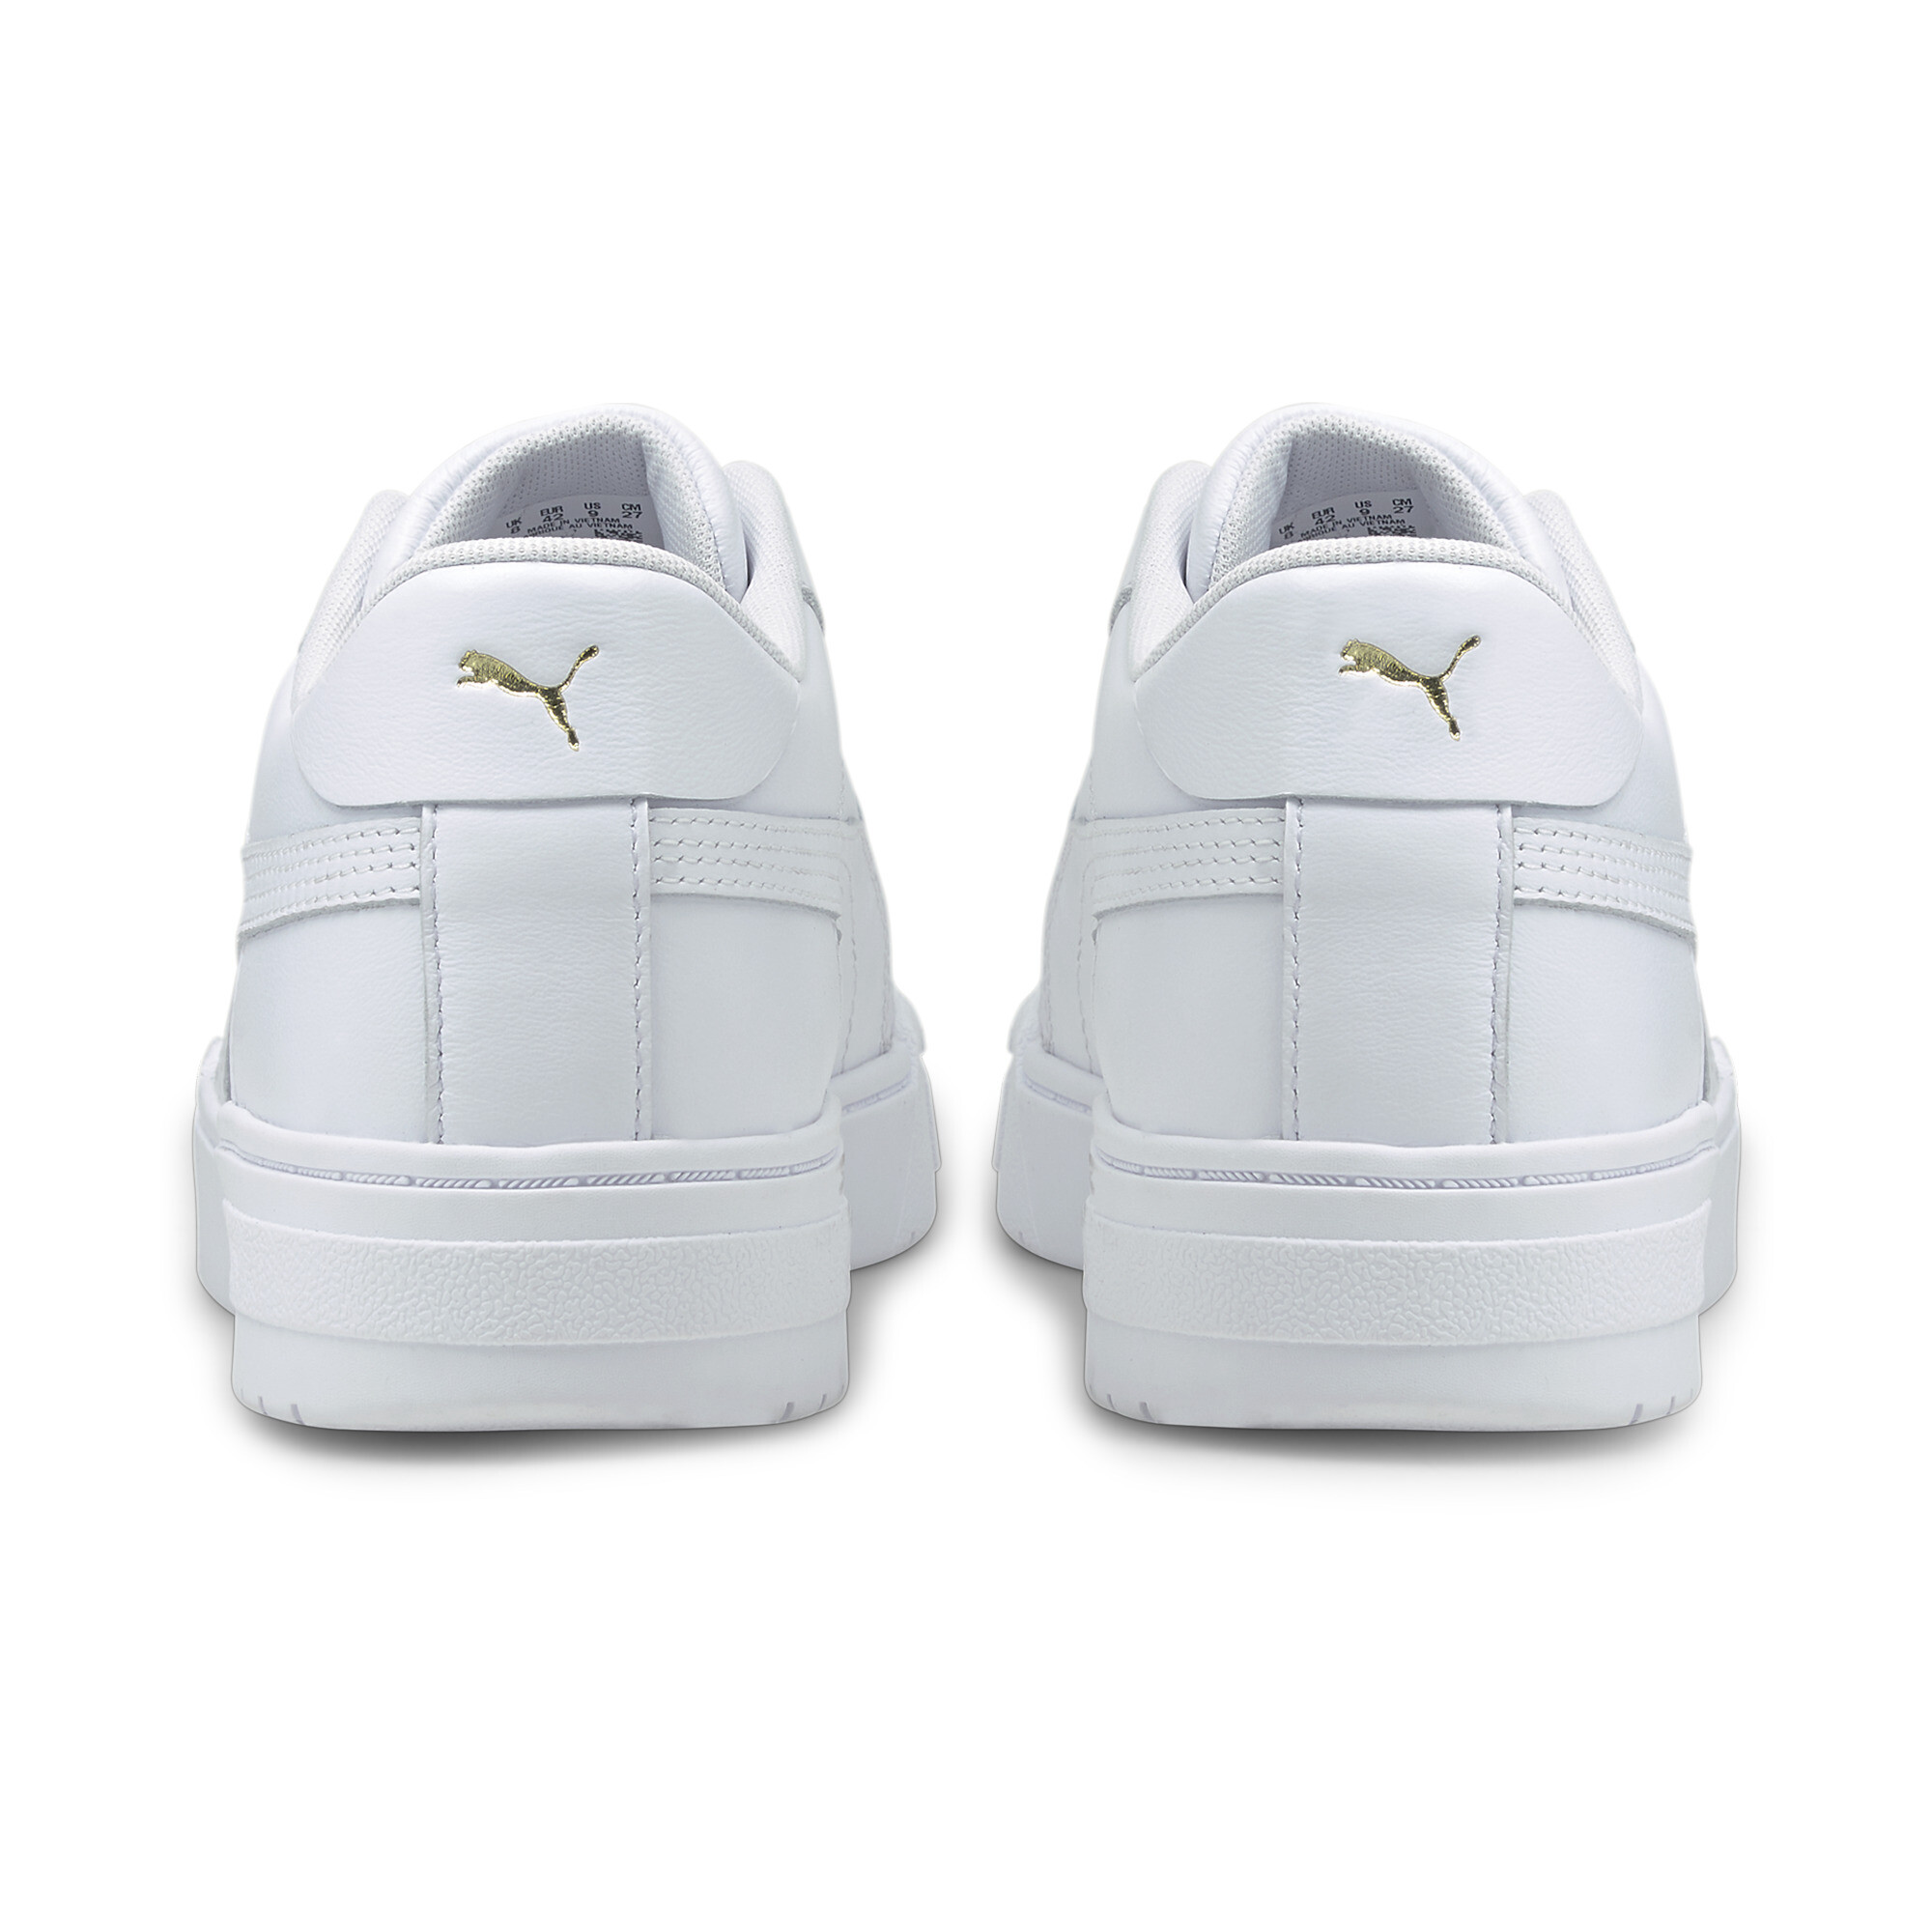 Men's PUMA CA Pro Classic Trainers Shoes In White, Size EU 40.5